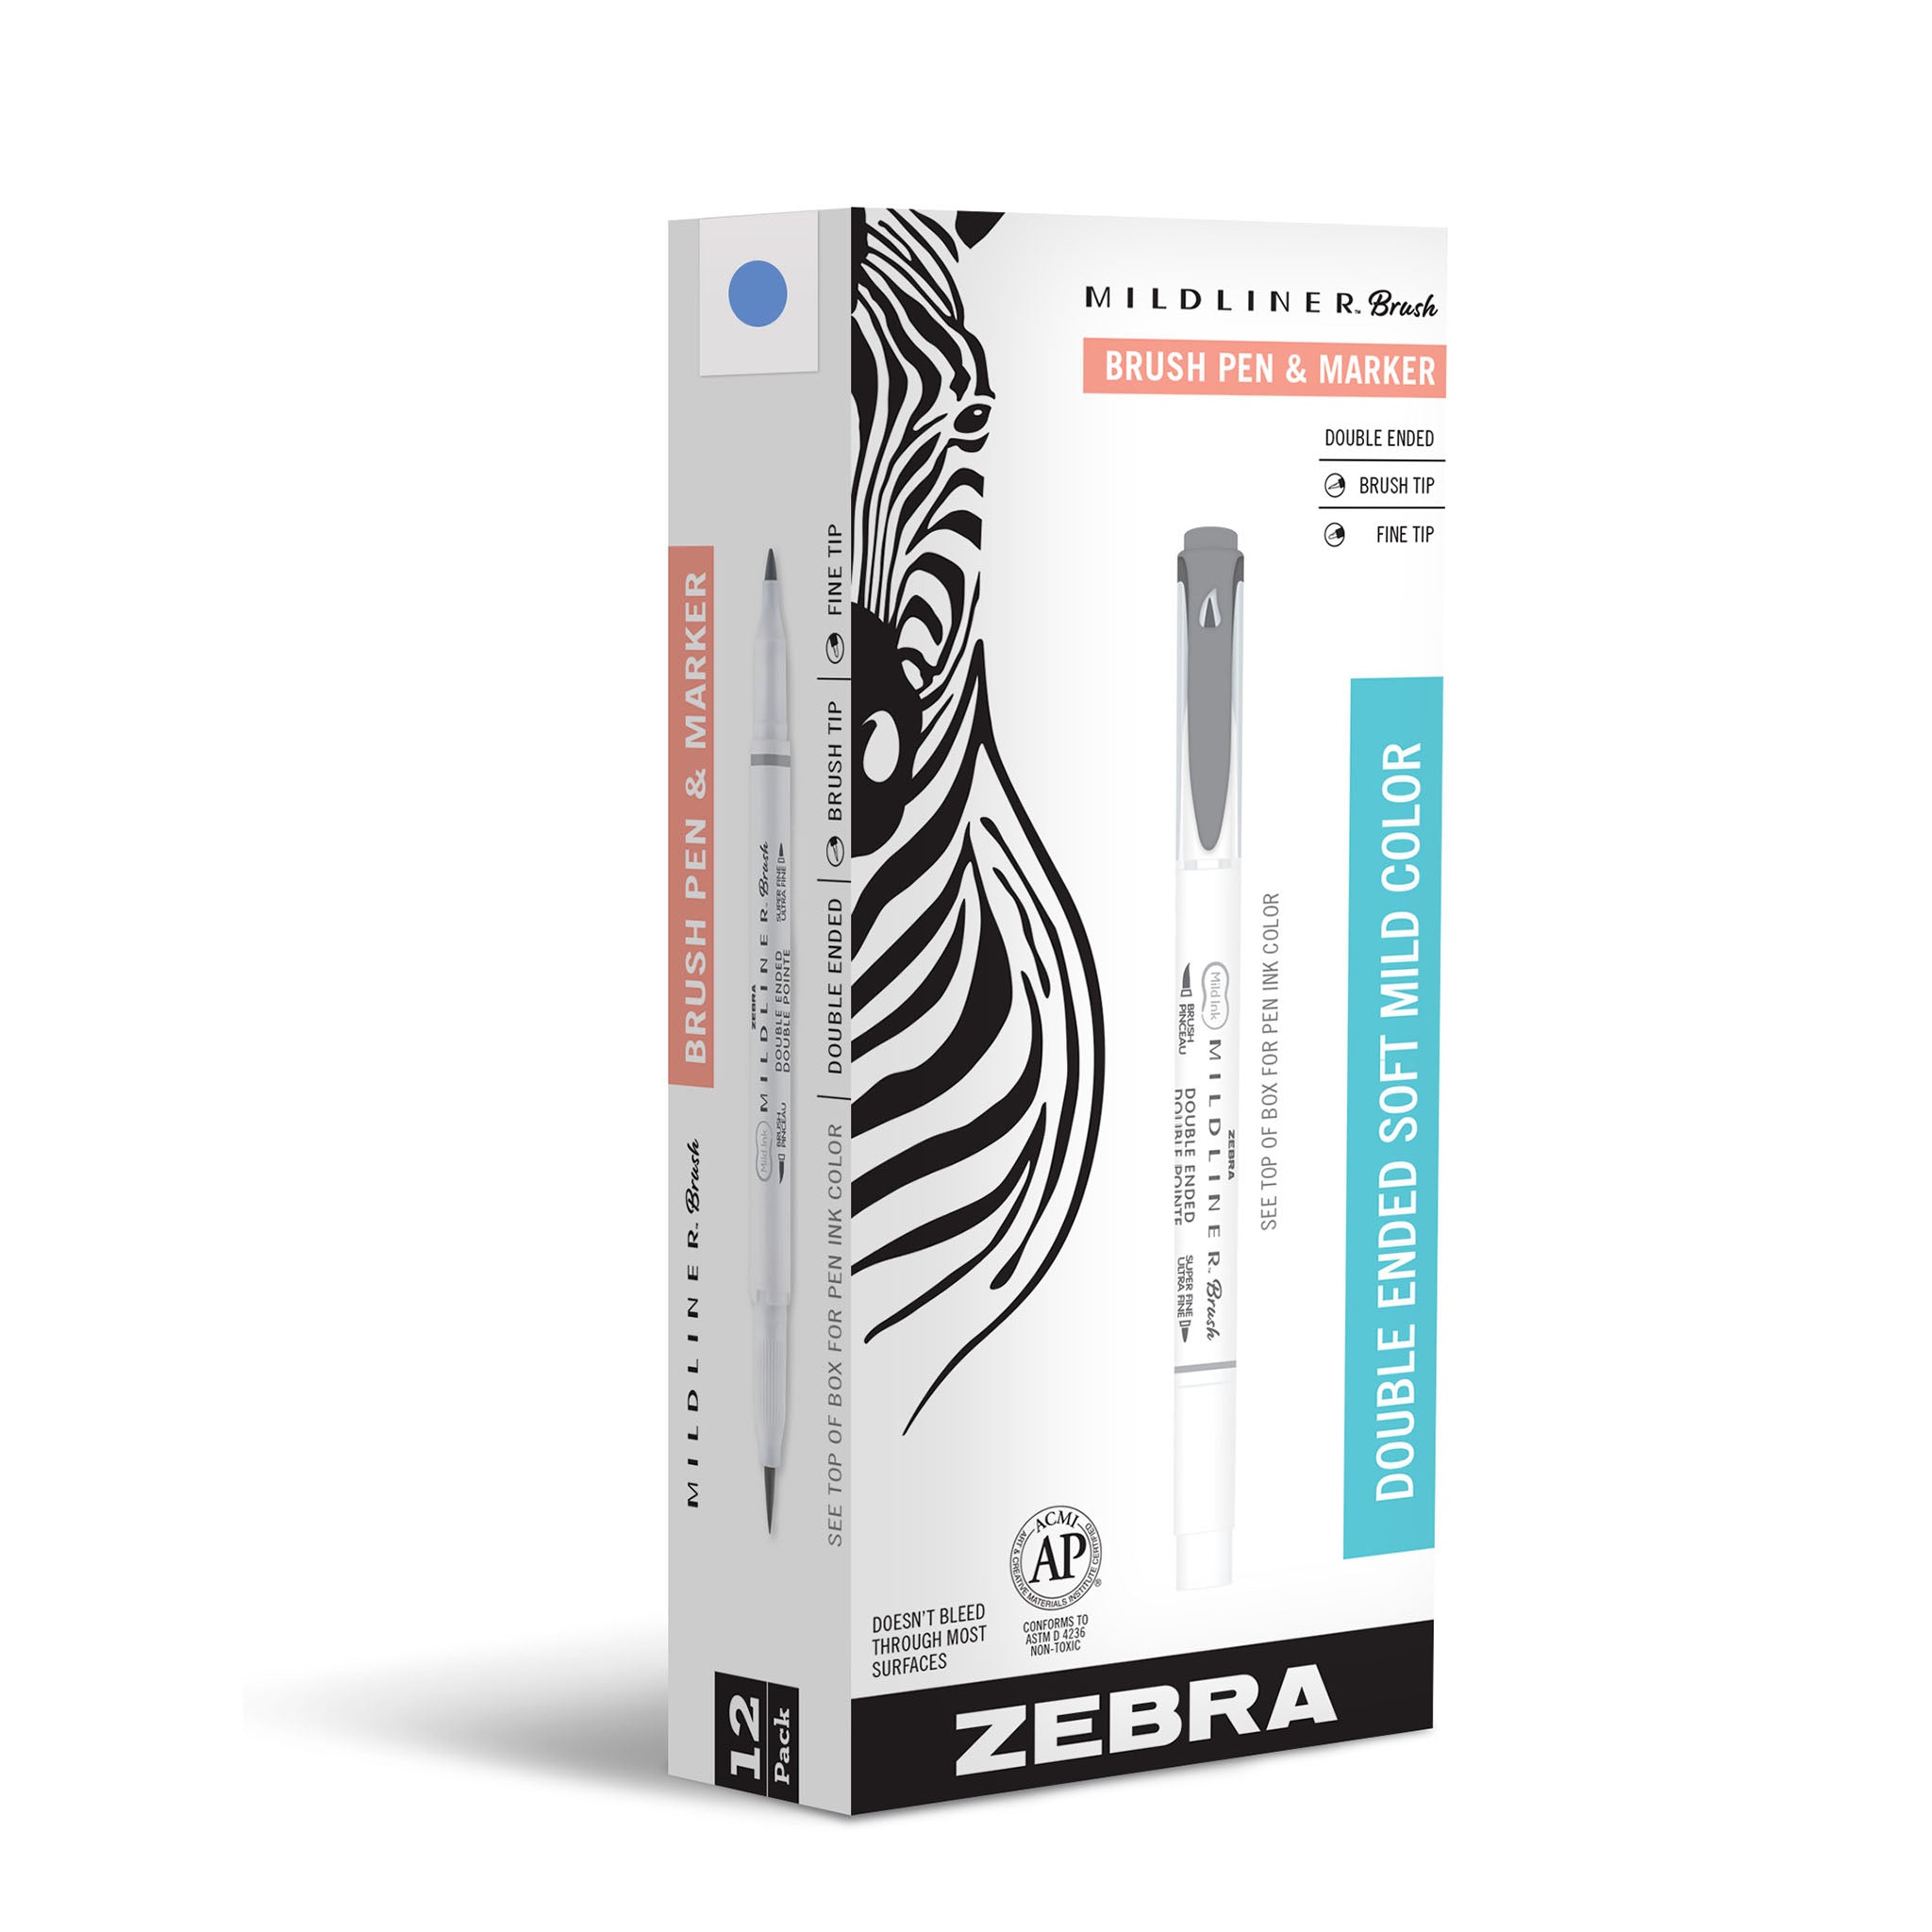 Zebra 25ct Mildliner Dual-tip Creative Markers Assorted Colors